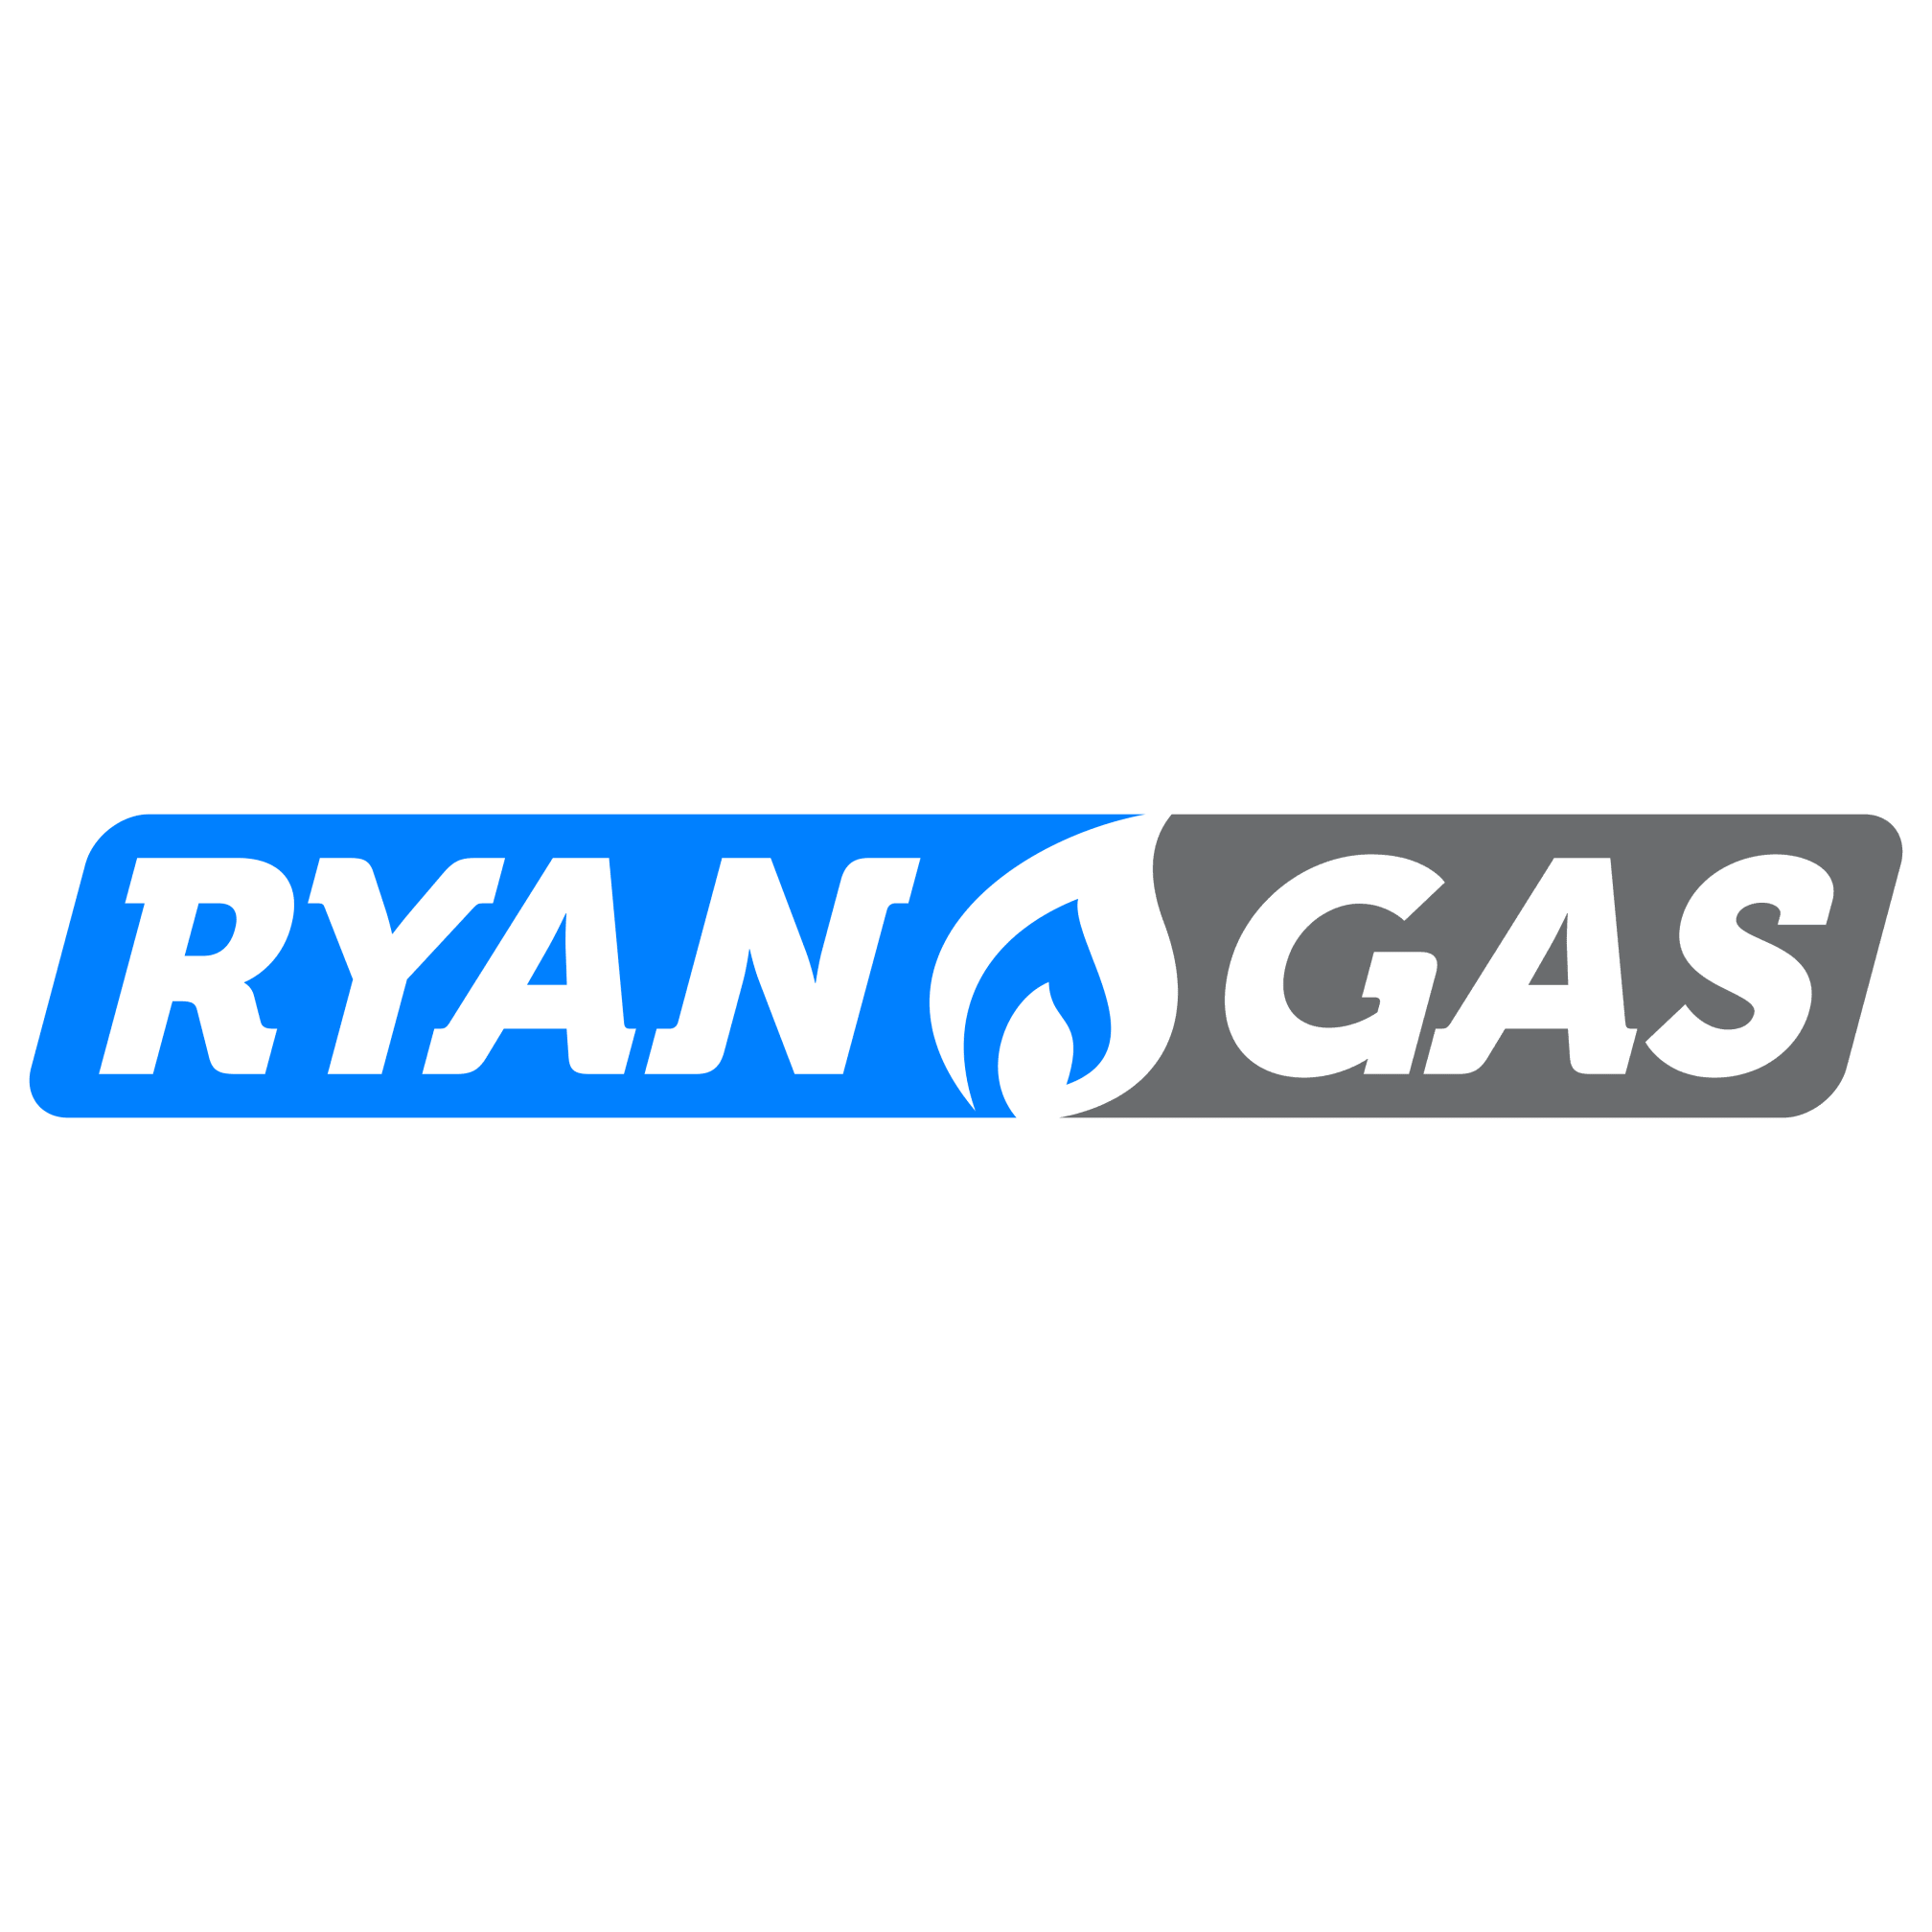 Ryan Gas Plumbing & Heating - Buckley, Clwyd CH7 2QB - 01244 960073 | ShowMeLocal.com